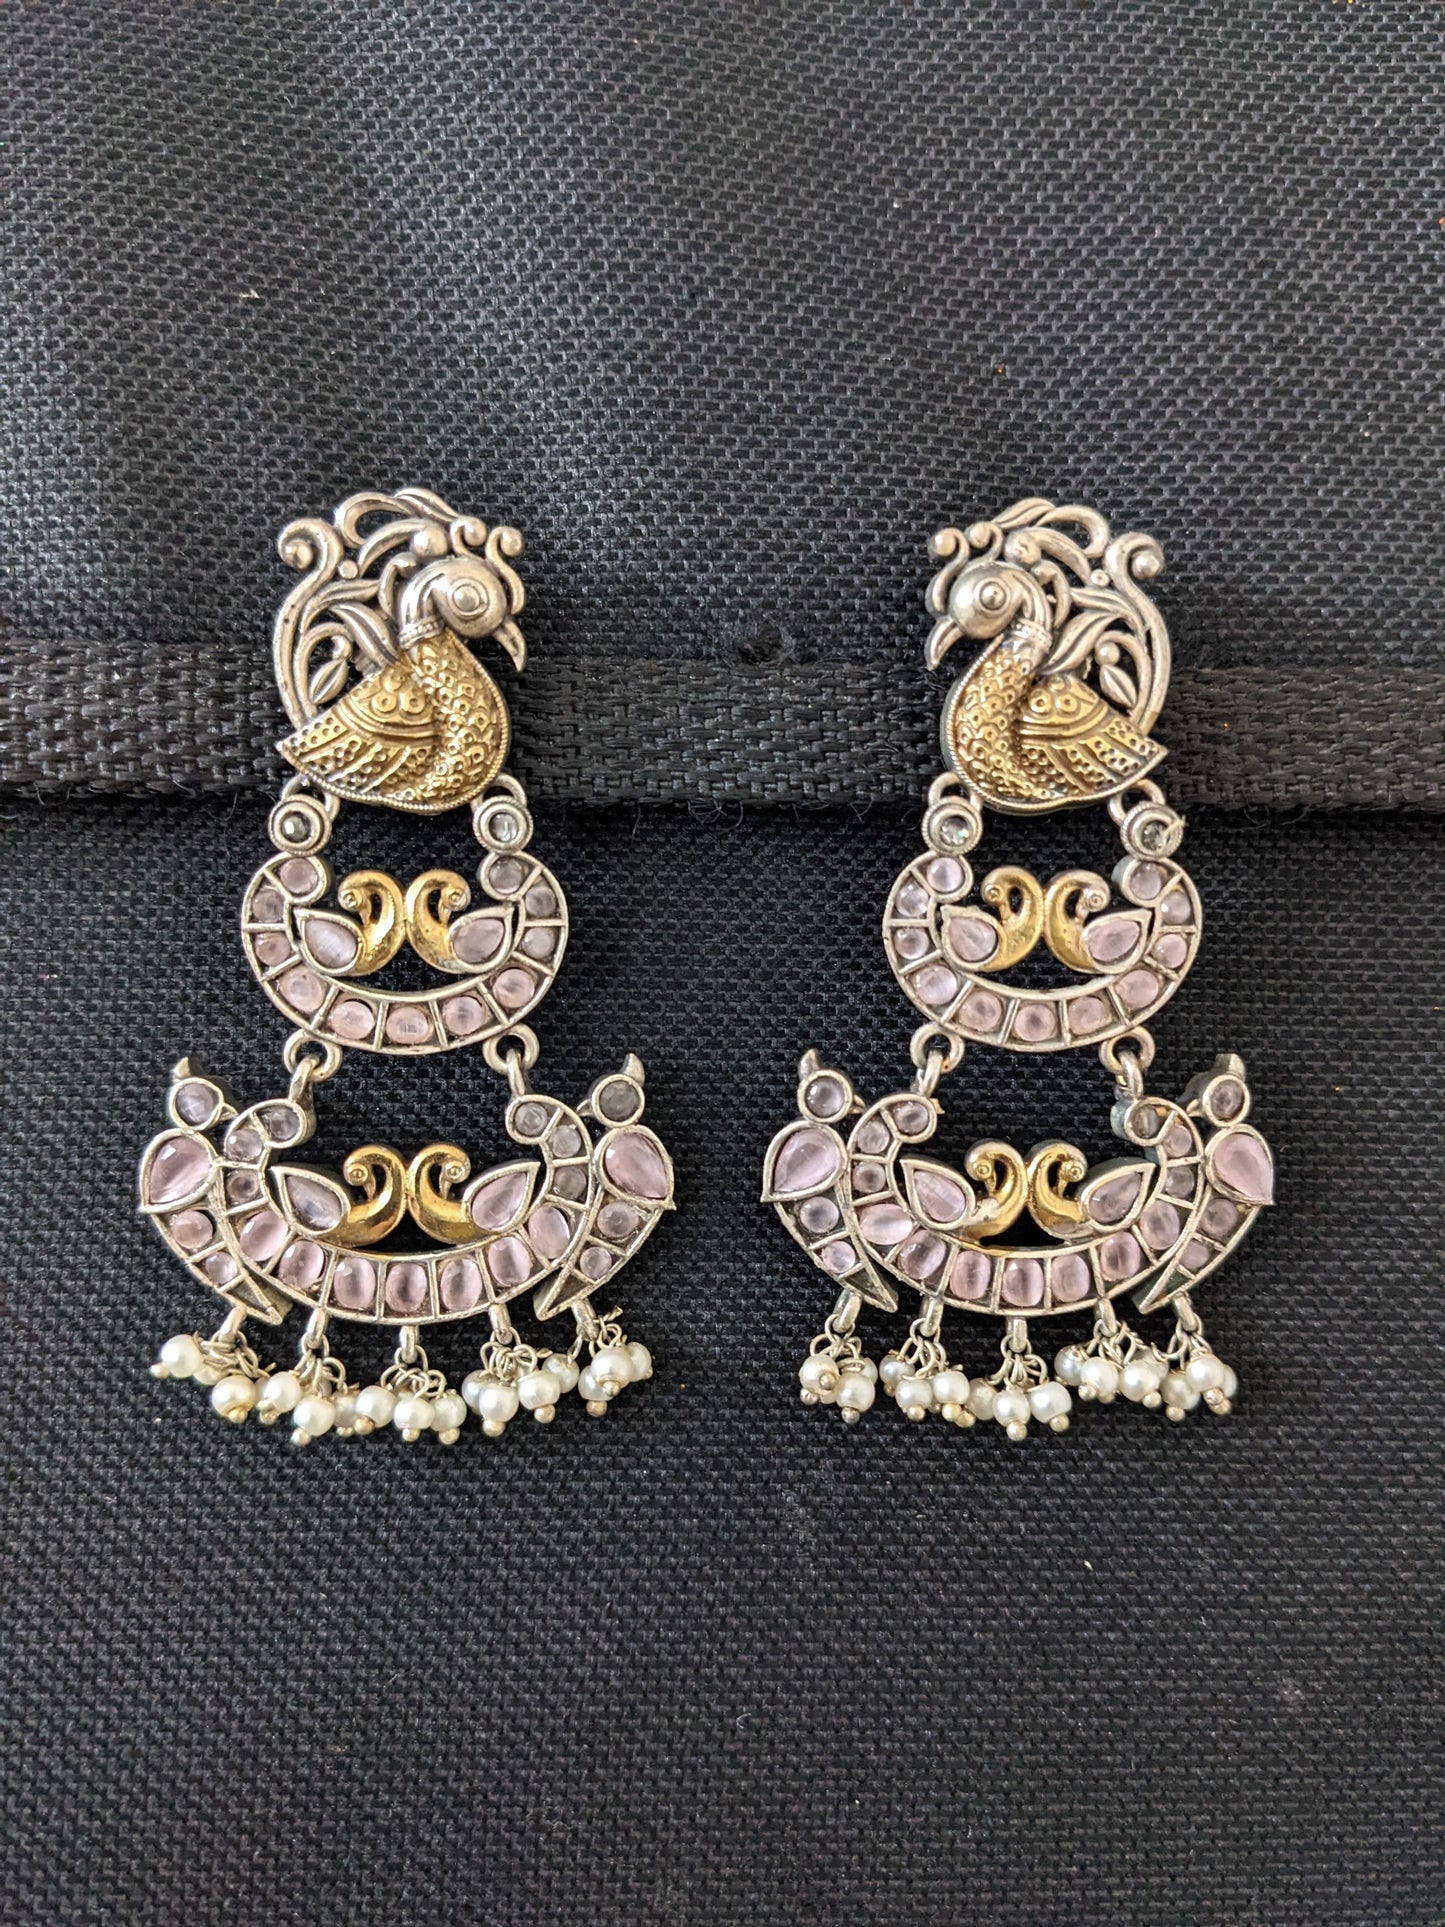 German Silver Dual tone Multiple Peacock Earrings